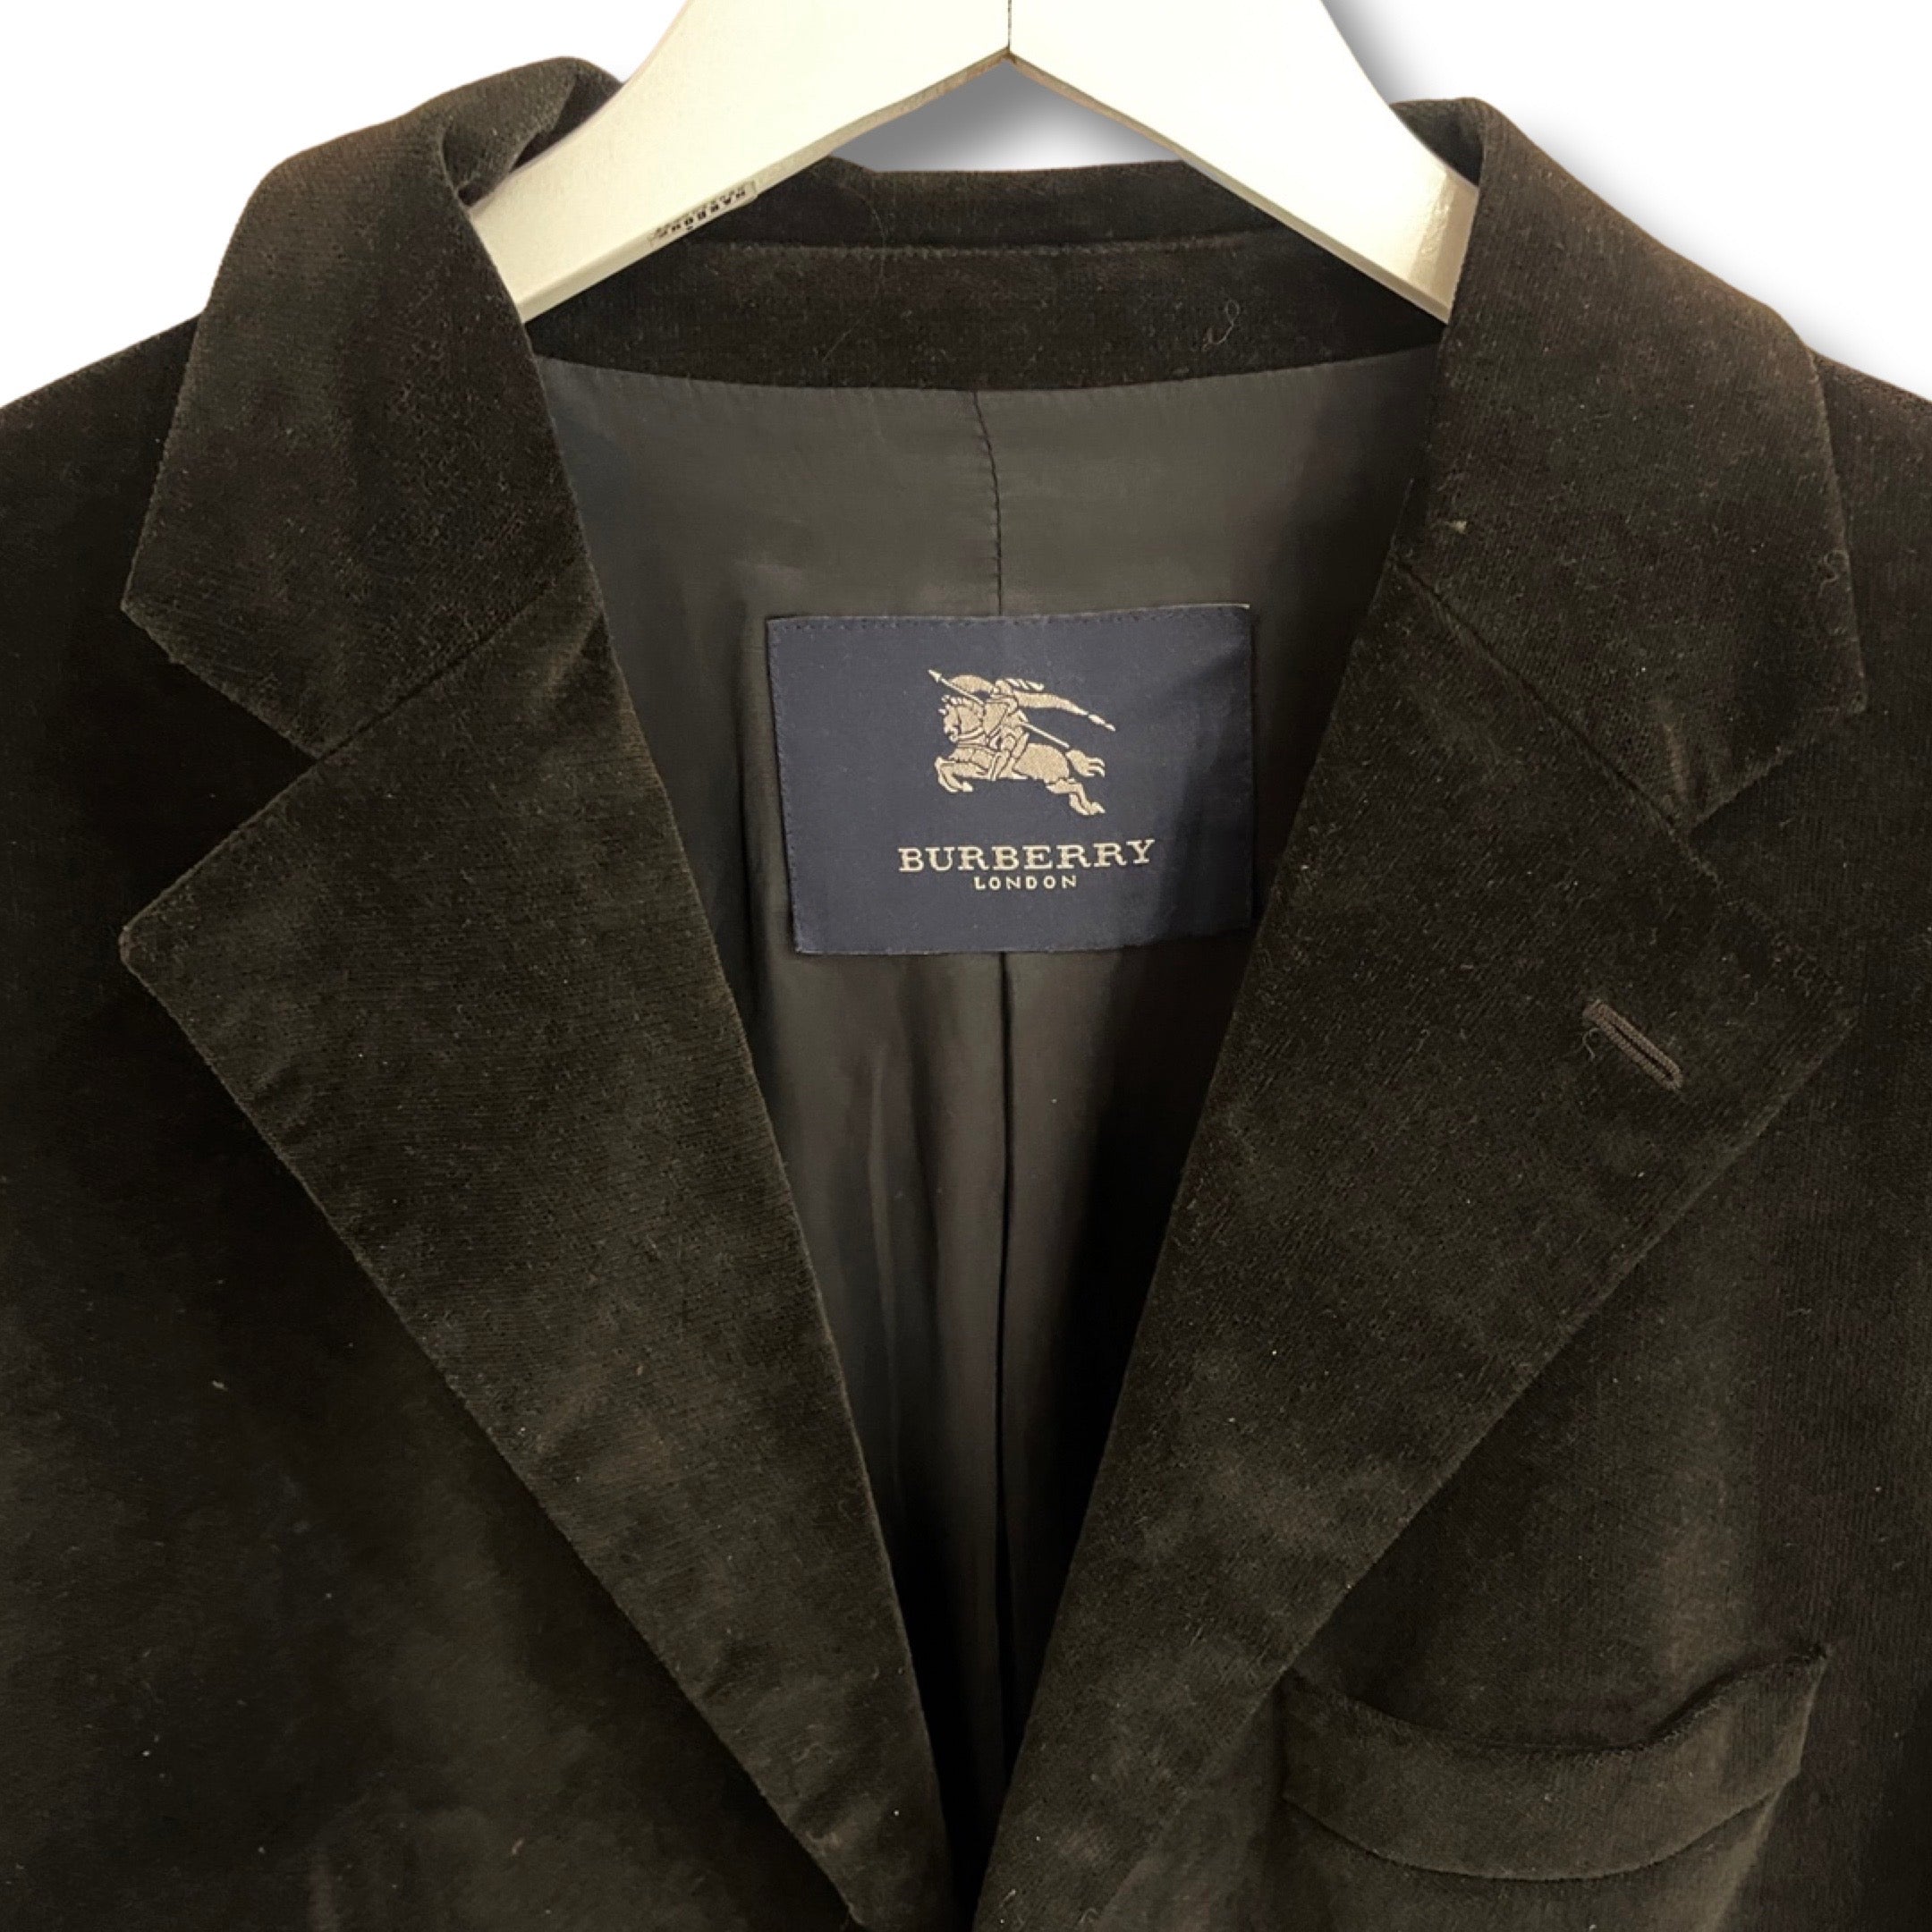 Velour black blazer by Burberry.